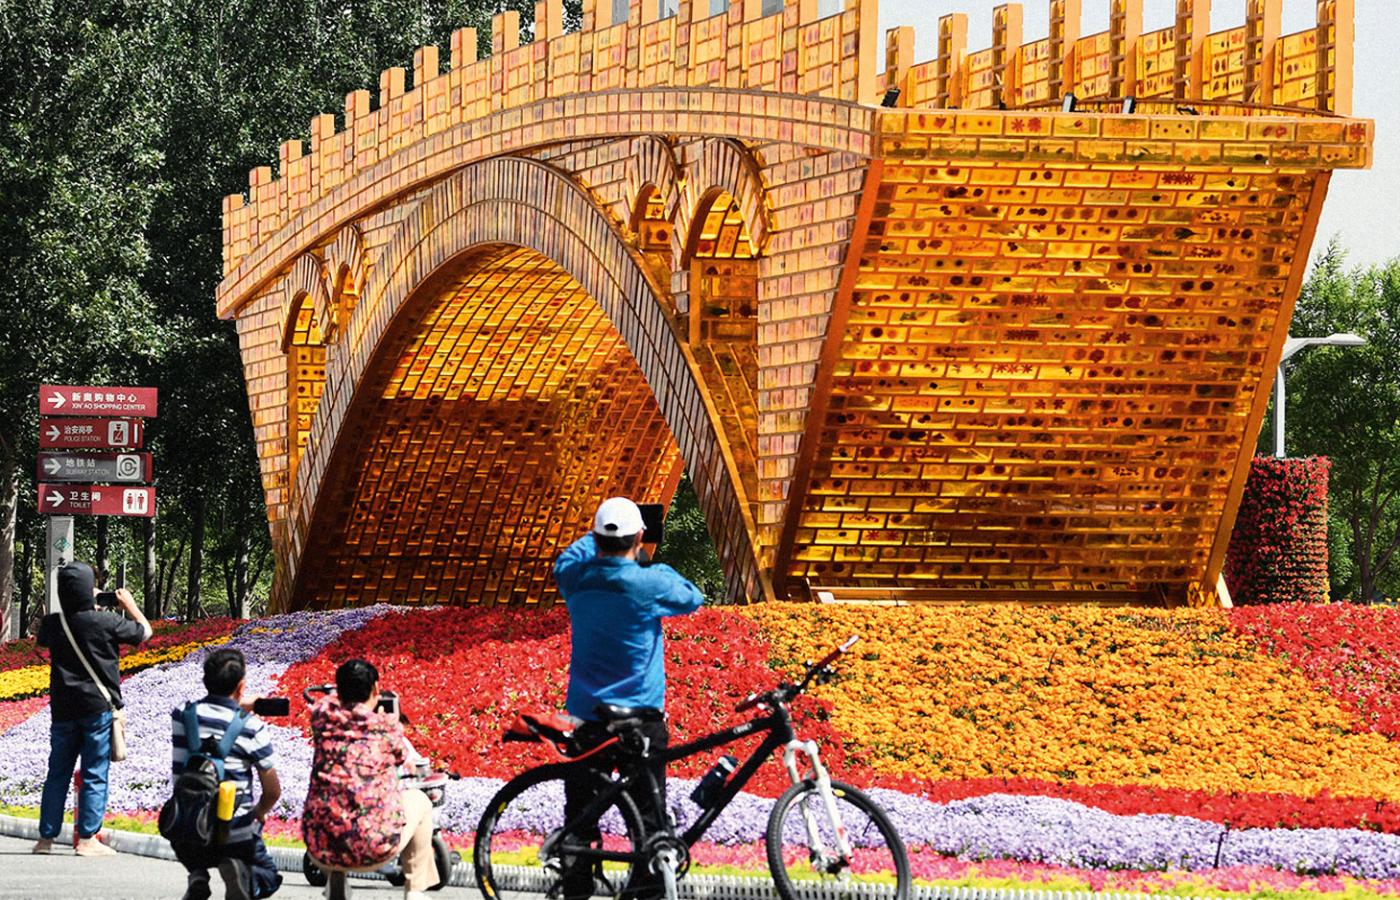 Dekoracyjny most zbudowany dla uświetnienia międzynarodowego Forum Pasa i Drogi zorganizowanego dla promowania inicjatywy prezydenta Xi Jinpinga, Pekin, maj 2017 r.